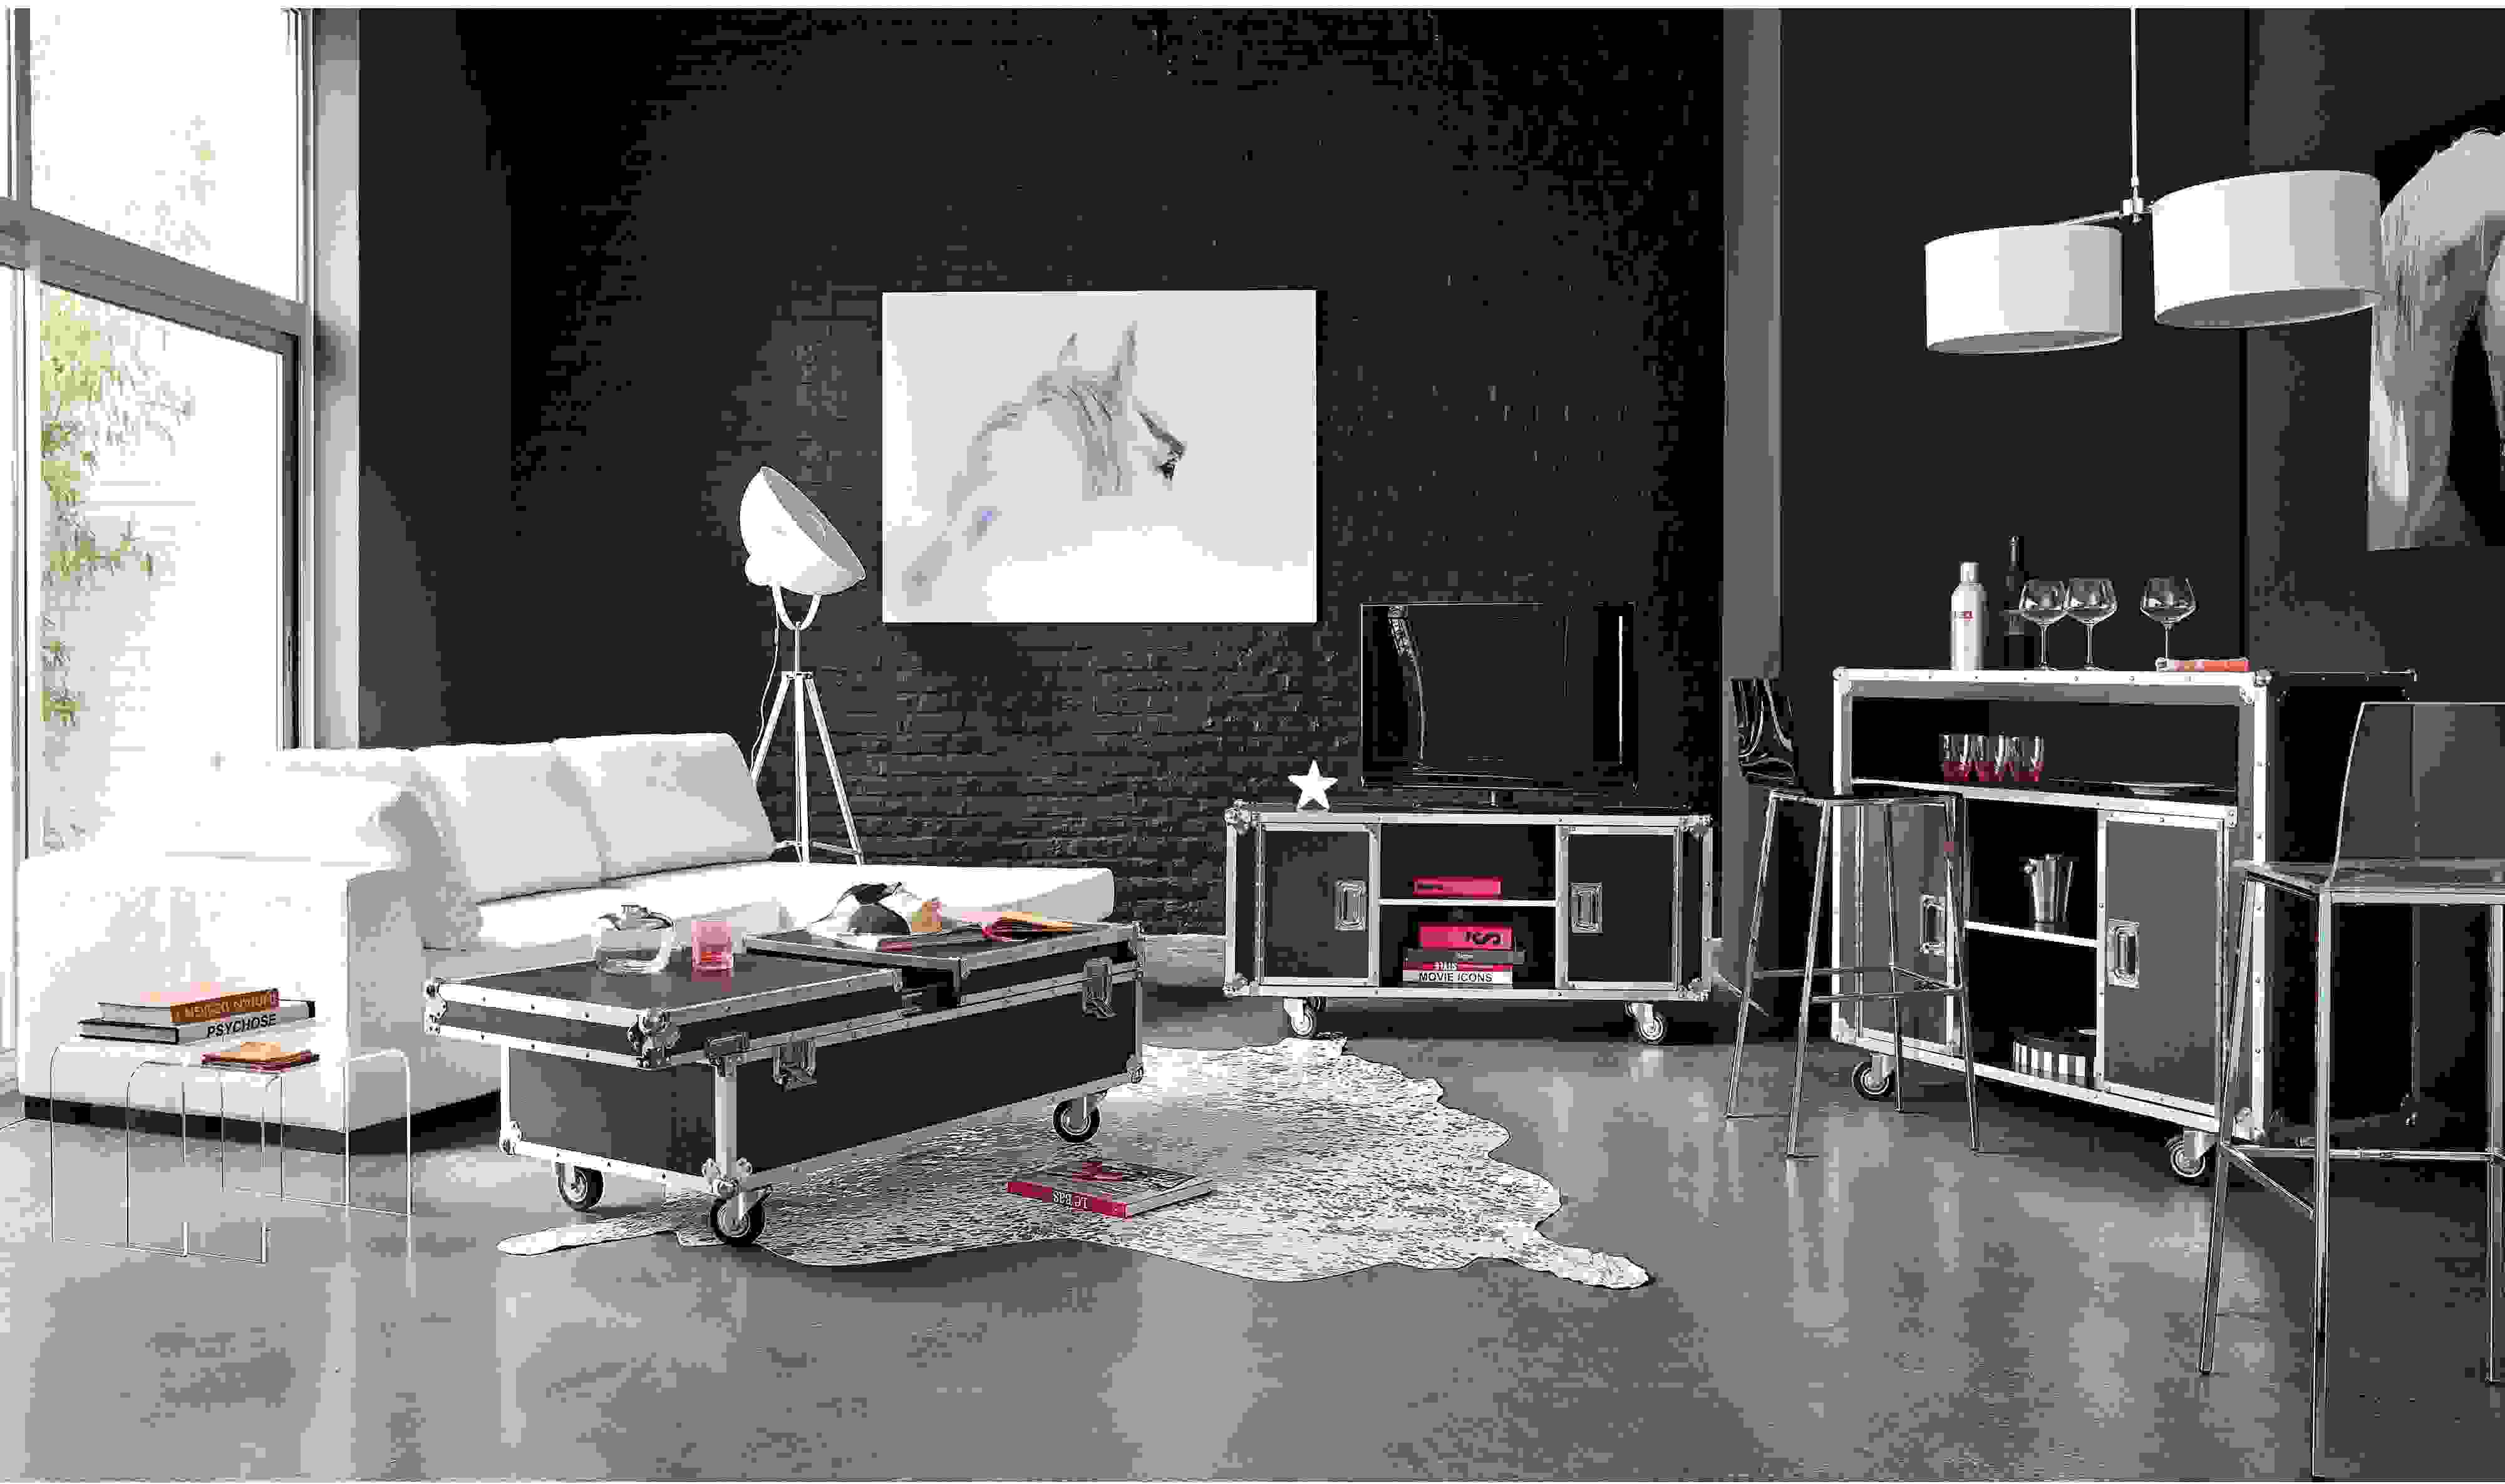 meuble Tv design moderne intérieur industriel design tapis de sol blanc table basse roulettes déco intérieur salon noir